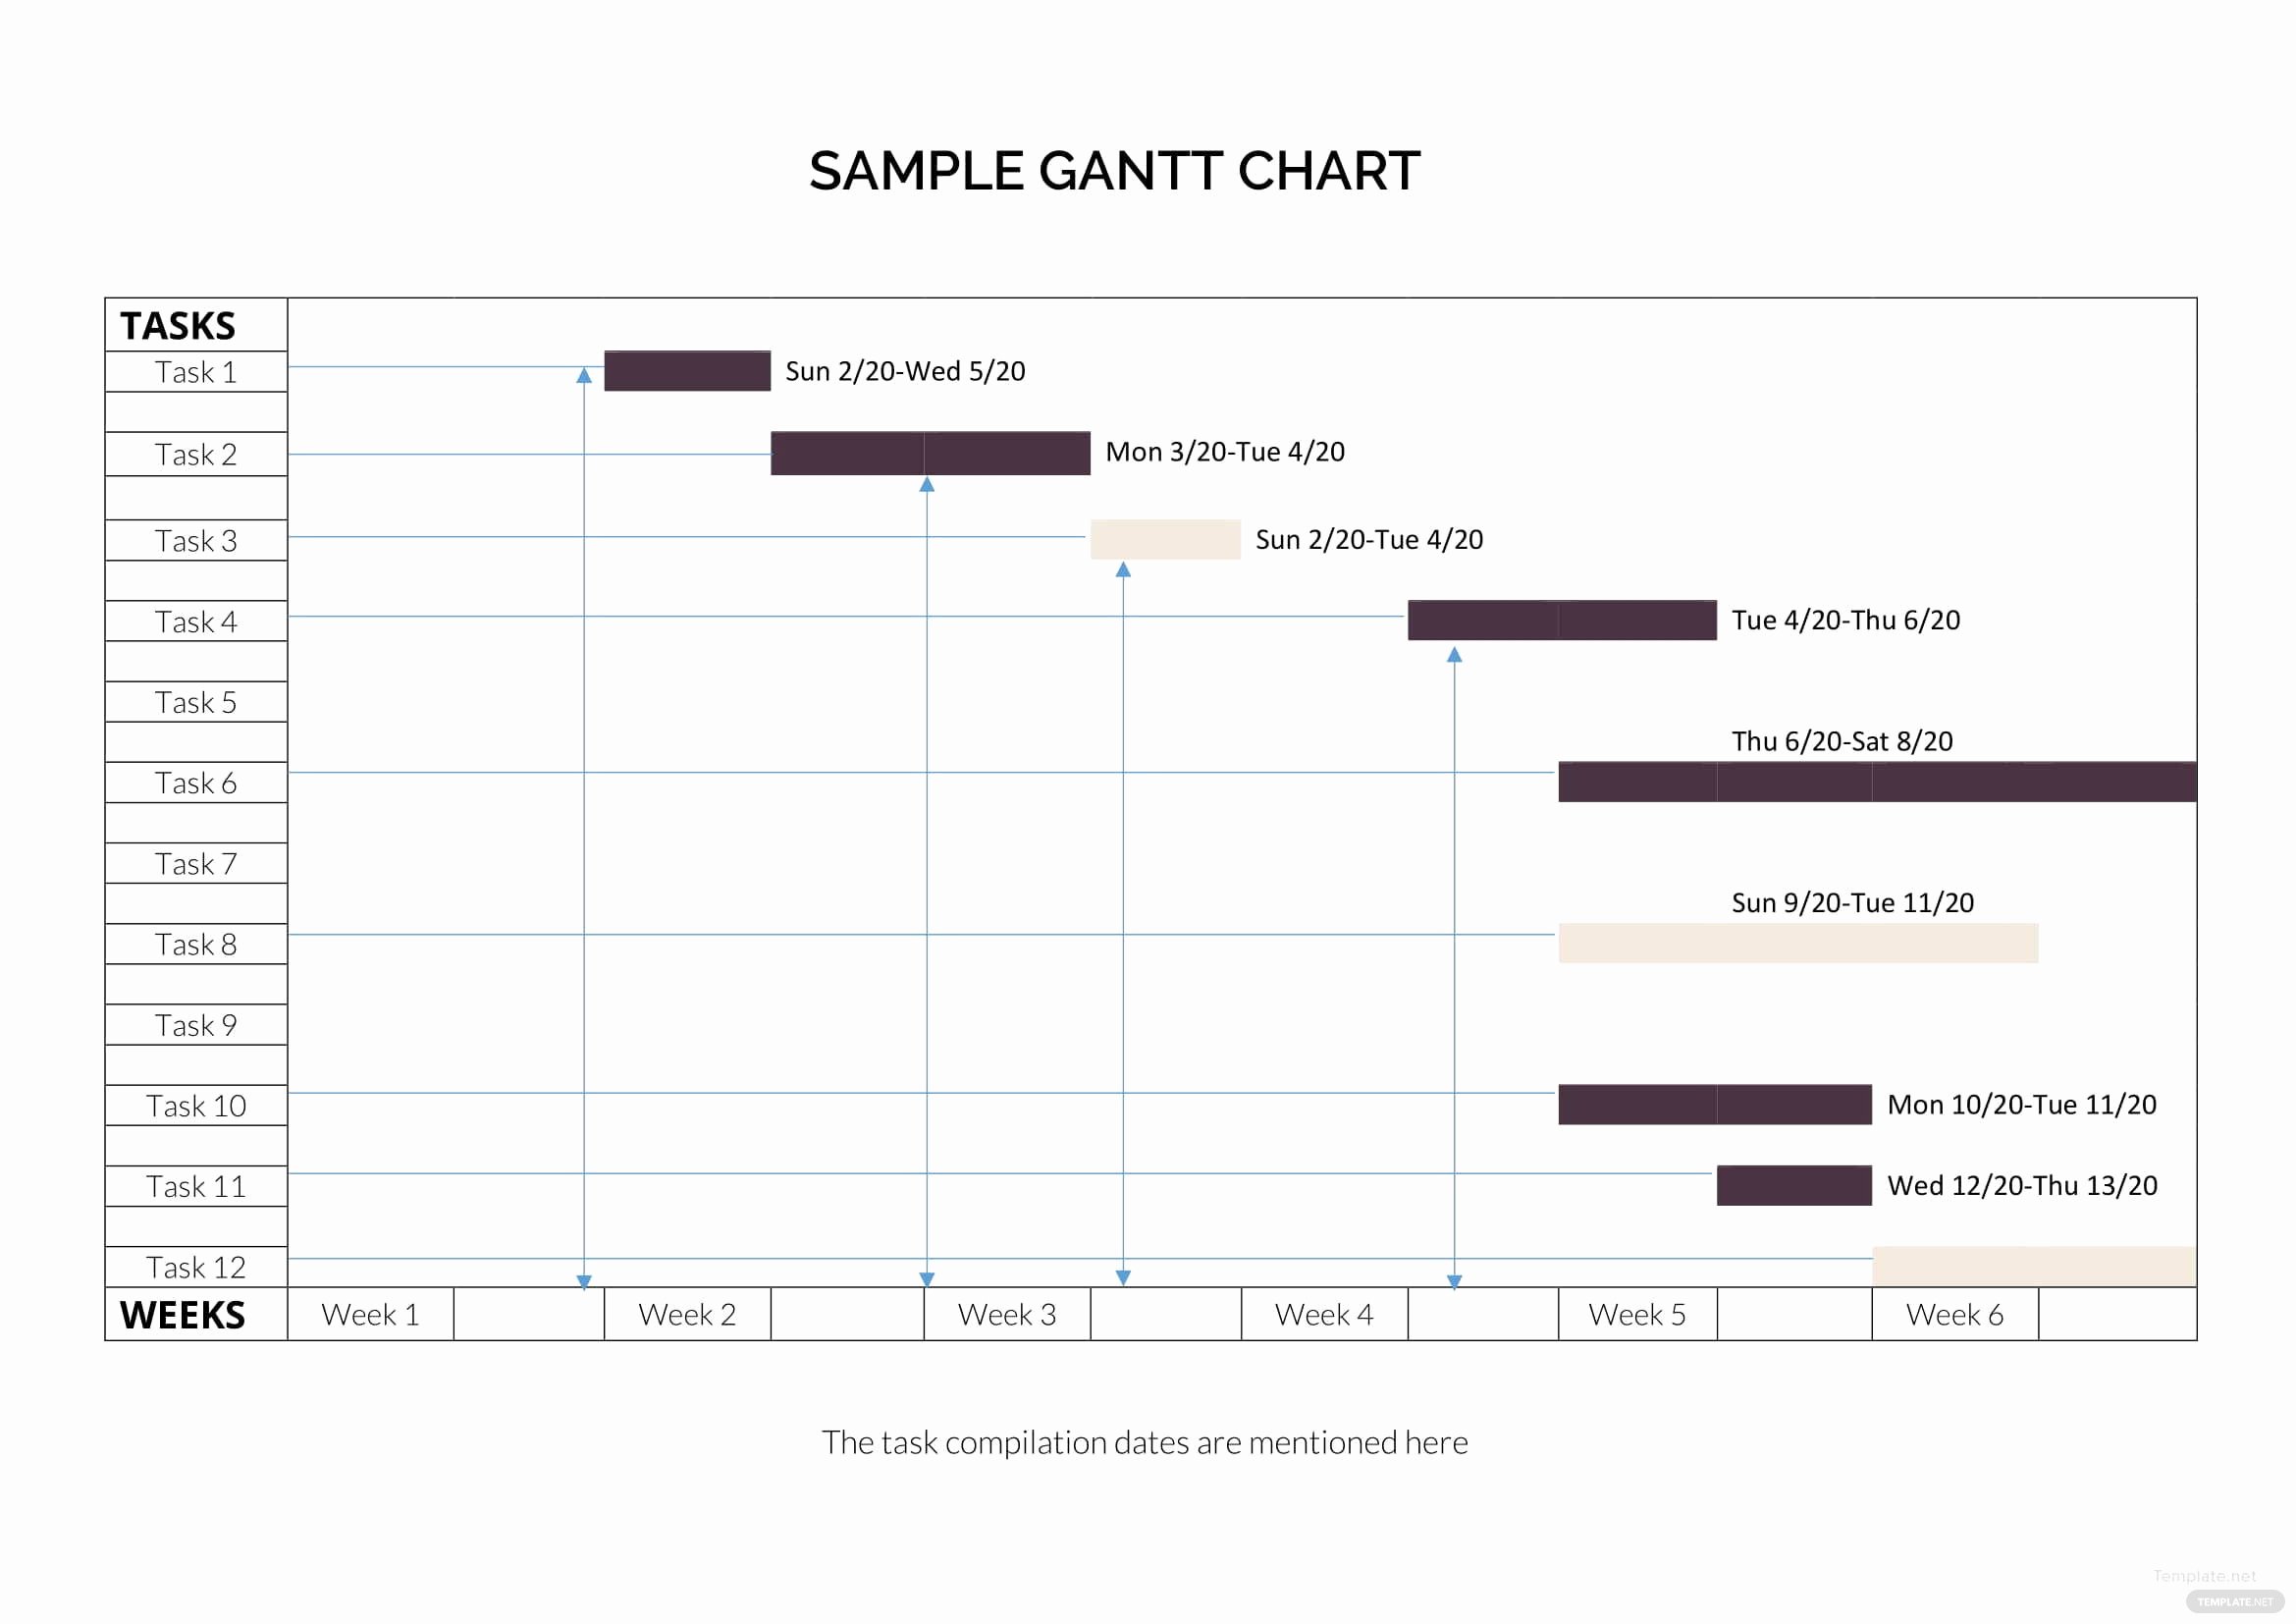 Sample Gantt Chart Template Inspirational Sample Gantt Chart Template In Microsoft Word Excel